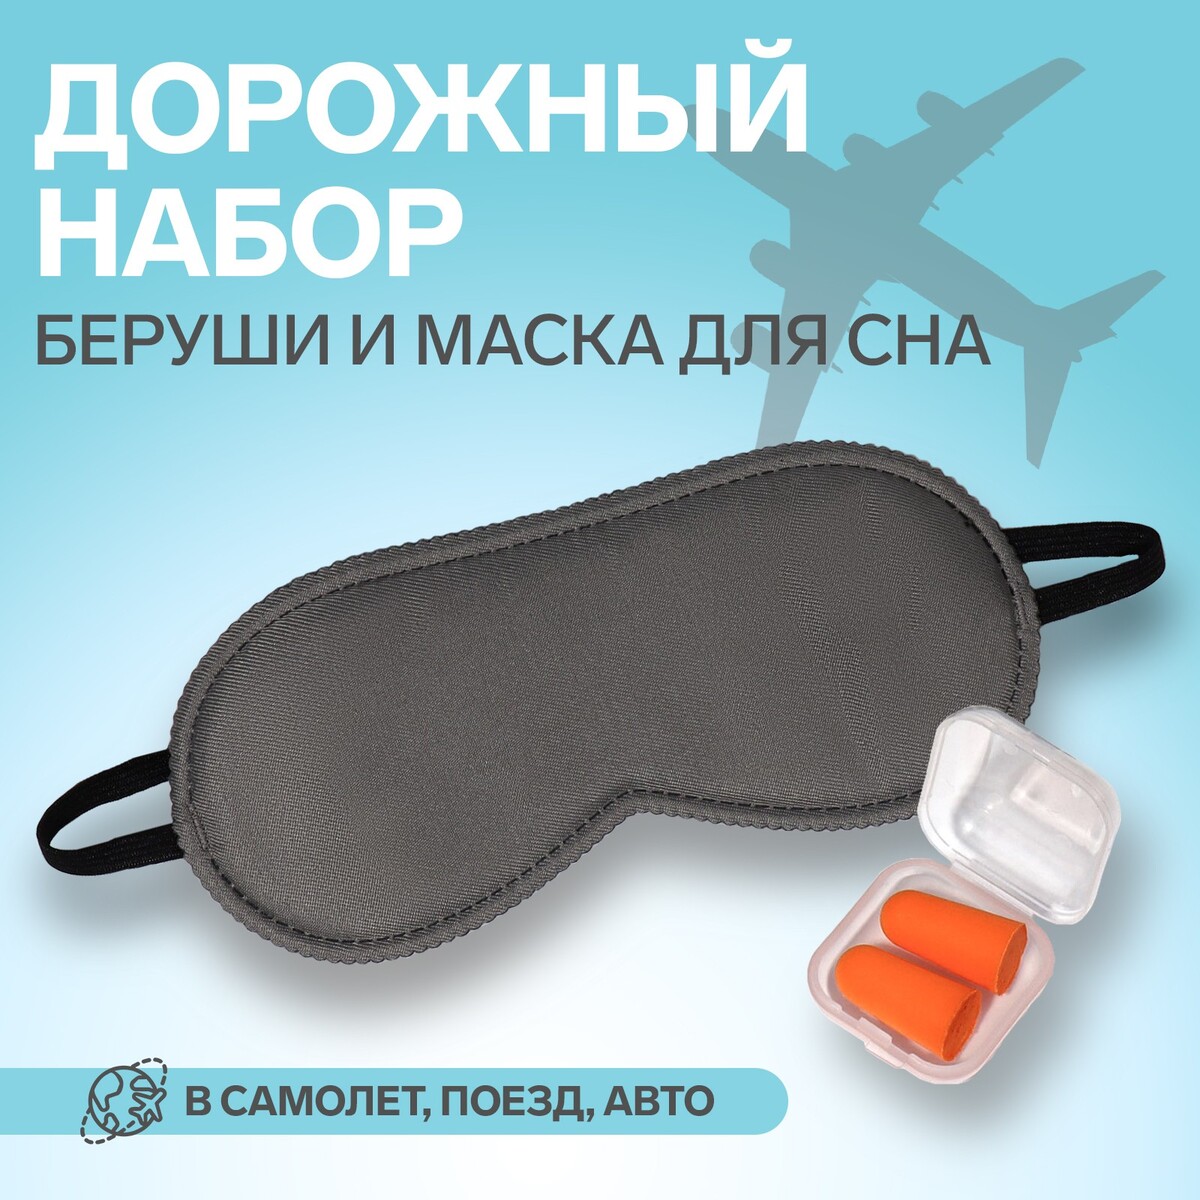 Набор туристический: маска для сна, беруши в футляре беруши в пластиковом футляре